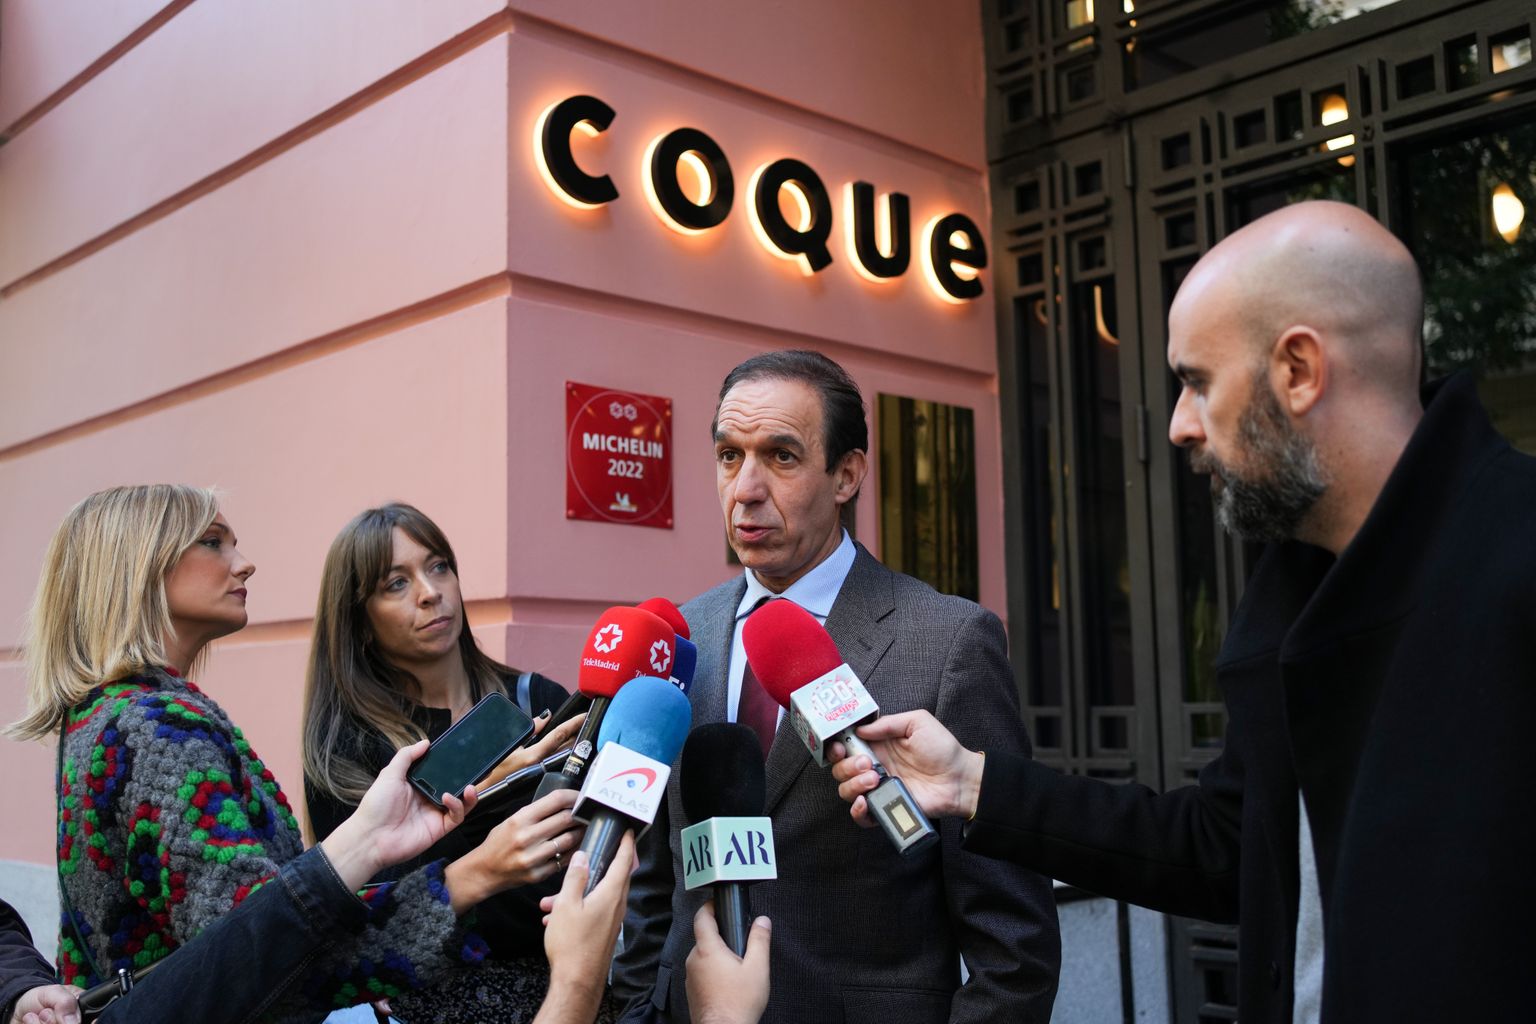 Hispaania Madrid restorani Coque üks omanikest Rafael Sandoval (keskel) kinnitas meedia esindajatele, et nende restoranist varastati 132 pudelit veini väärtuses 200 000 eurot